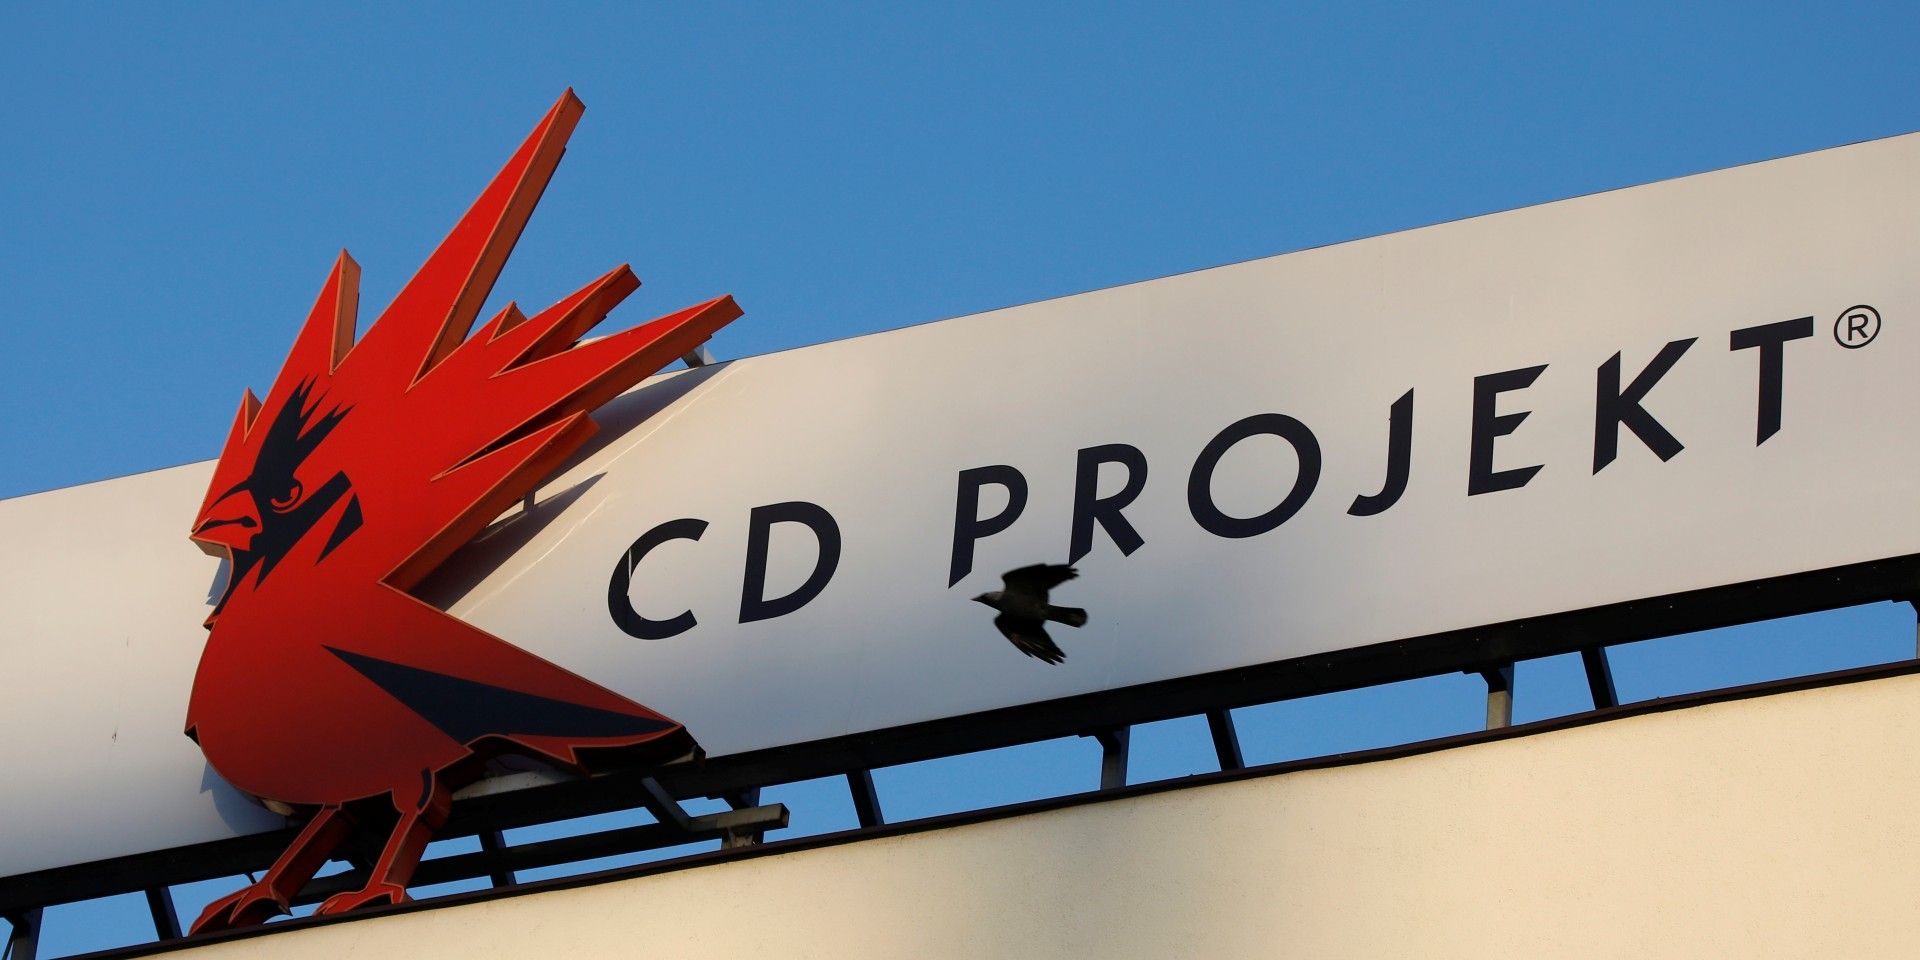 CD Projekt Red office